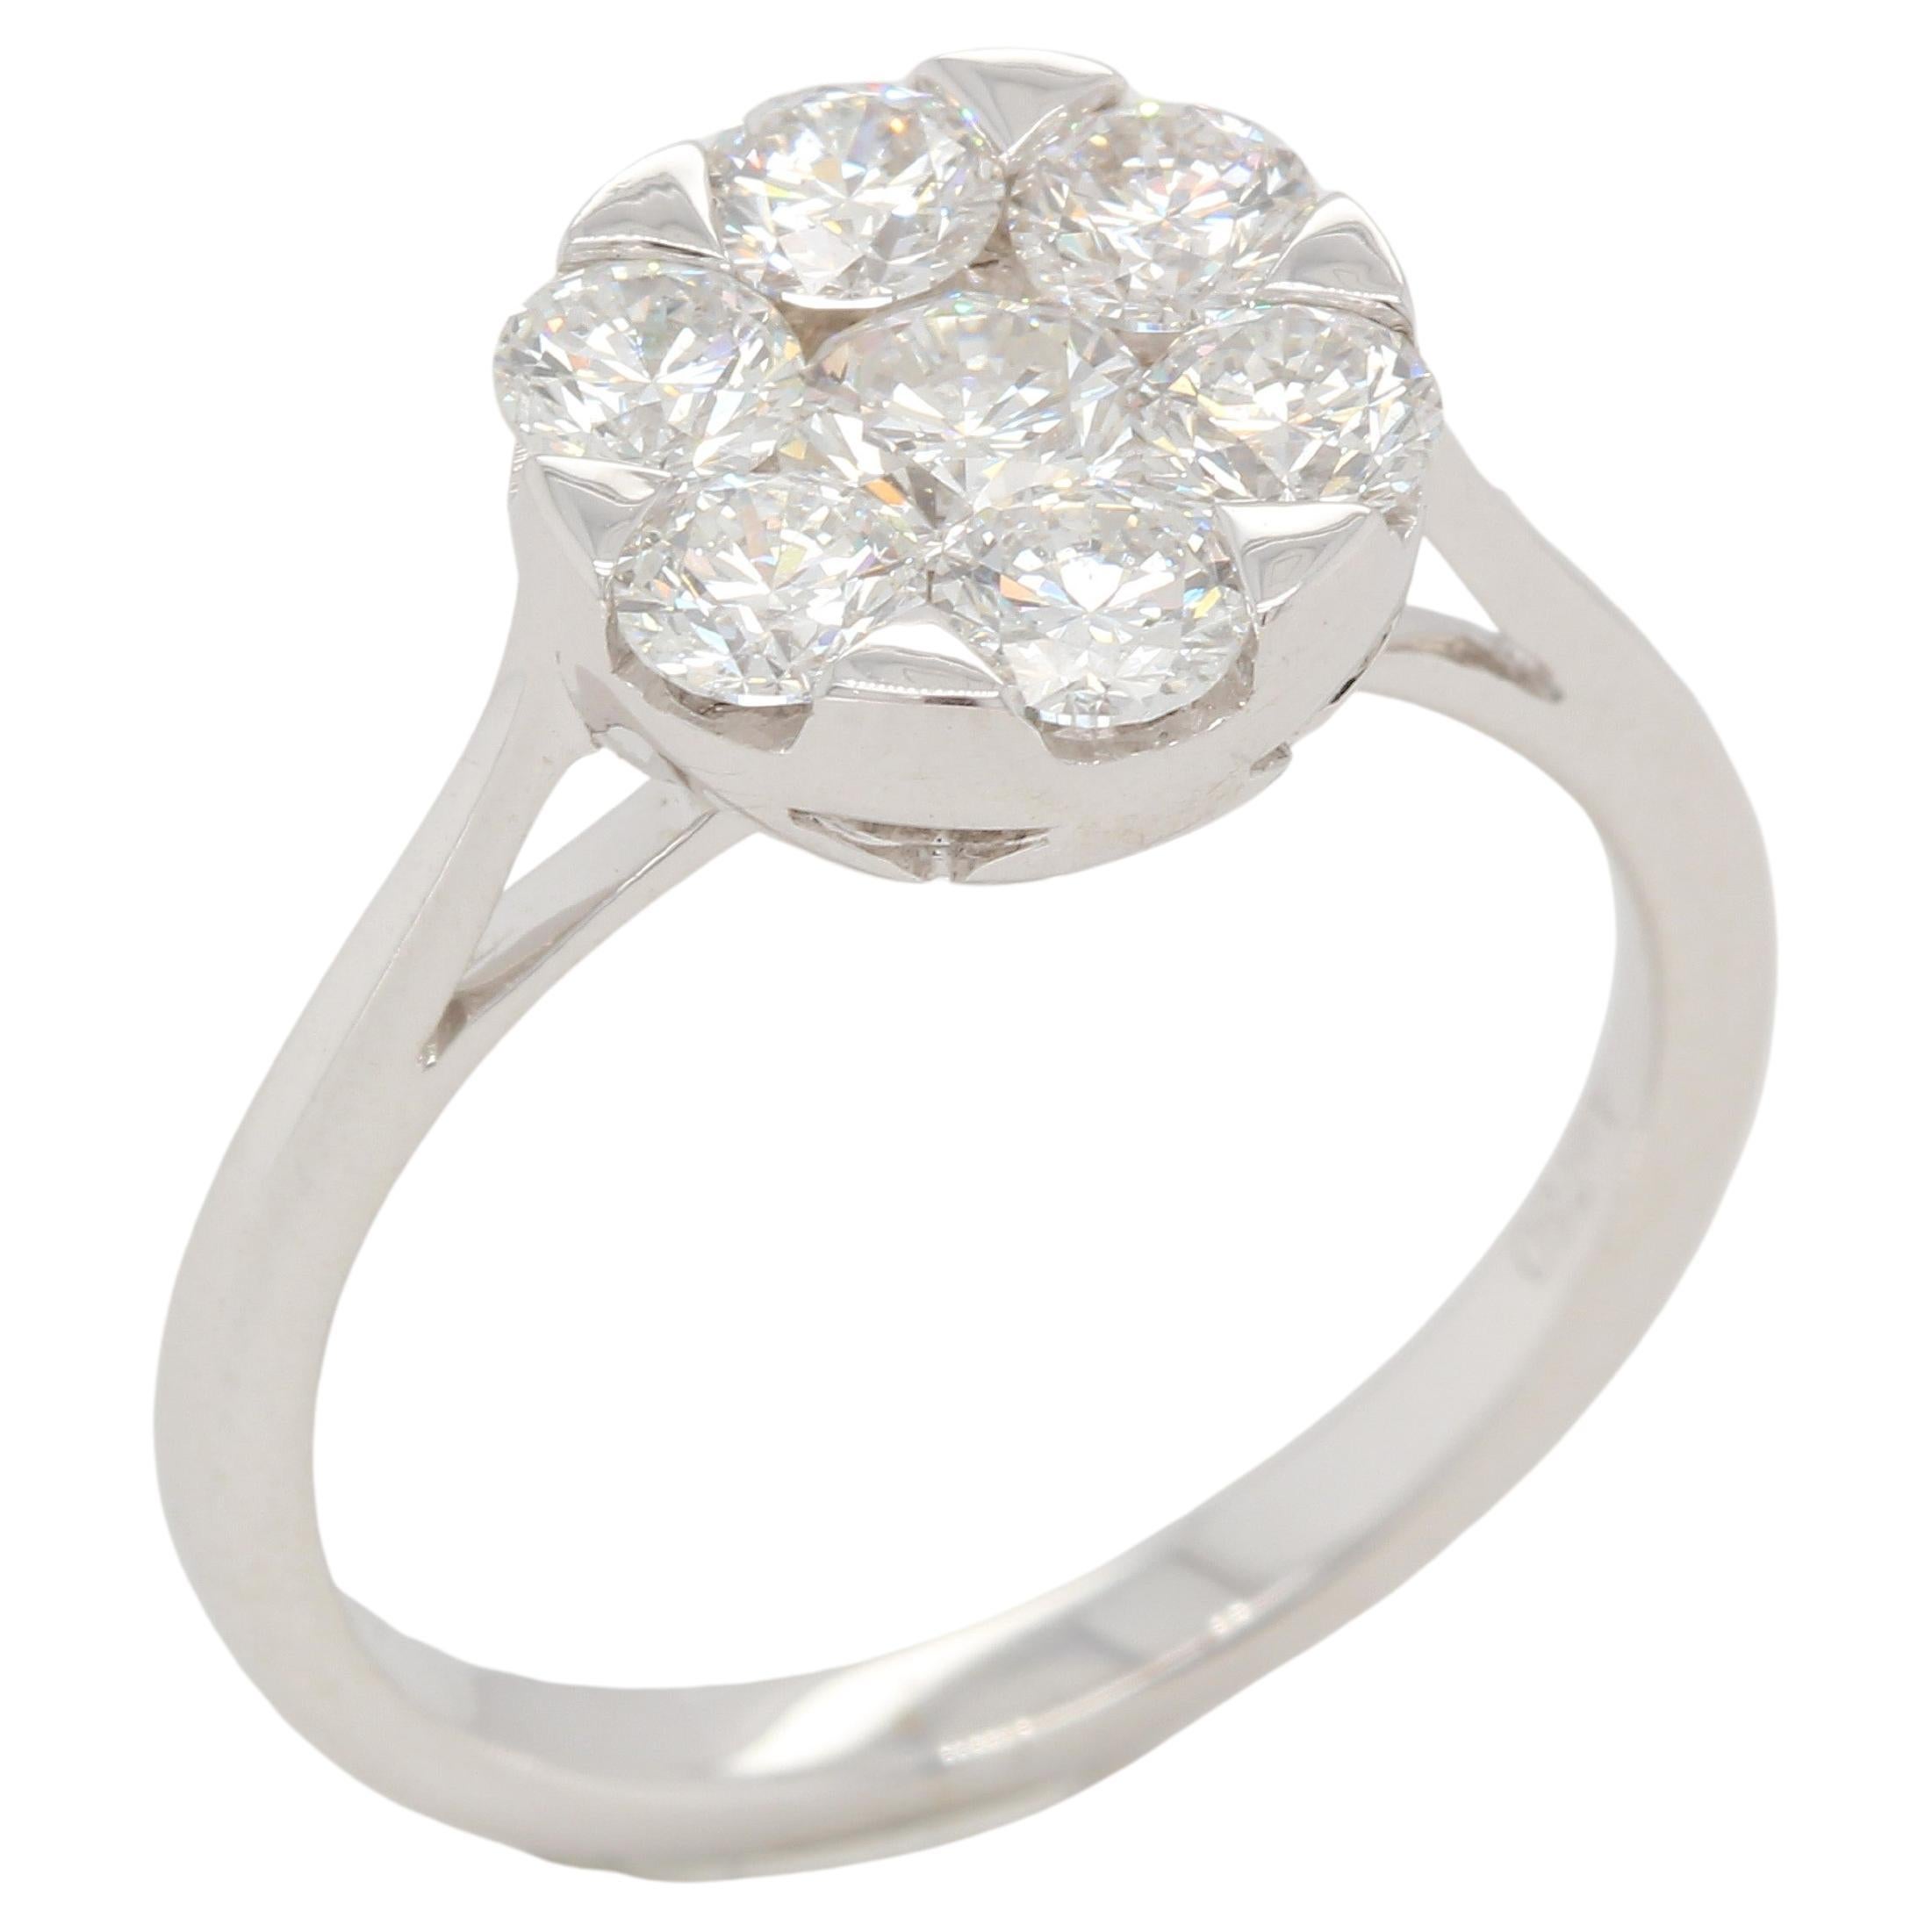 1.45 Carat Diamond Engagement Ring in 18 Karat Gold